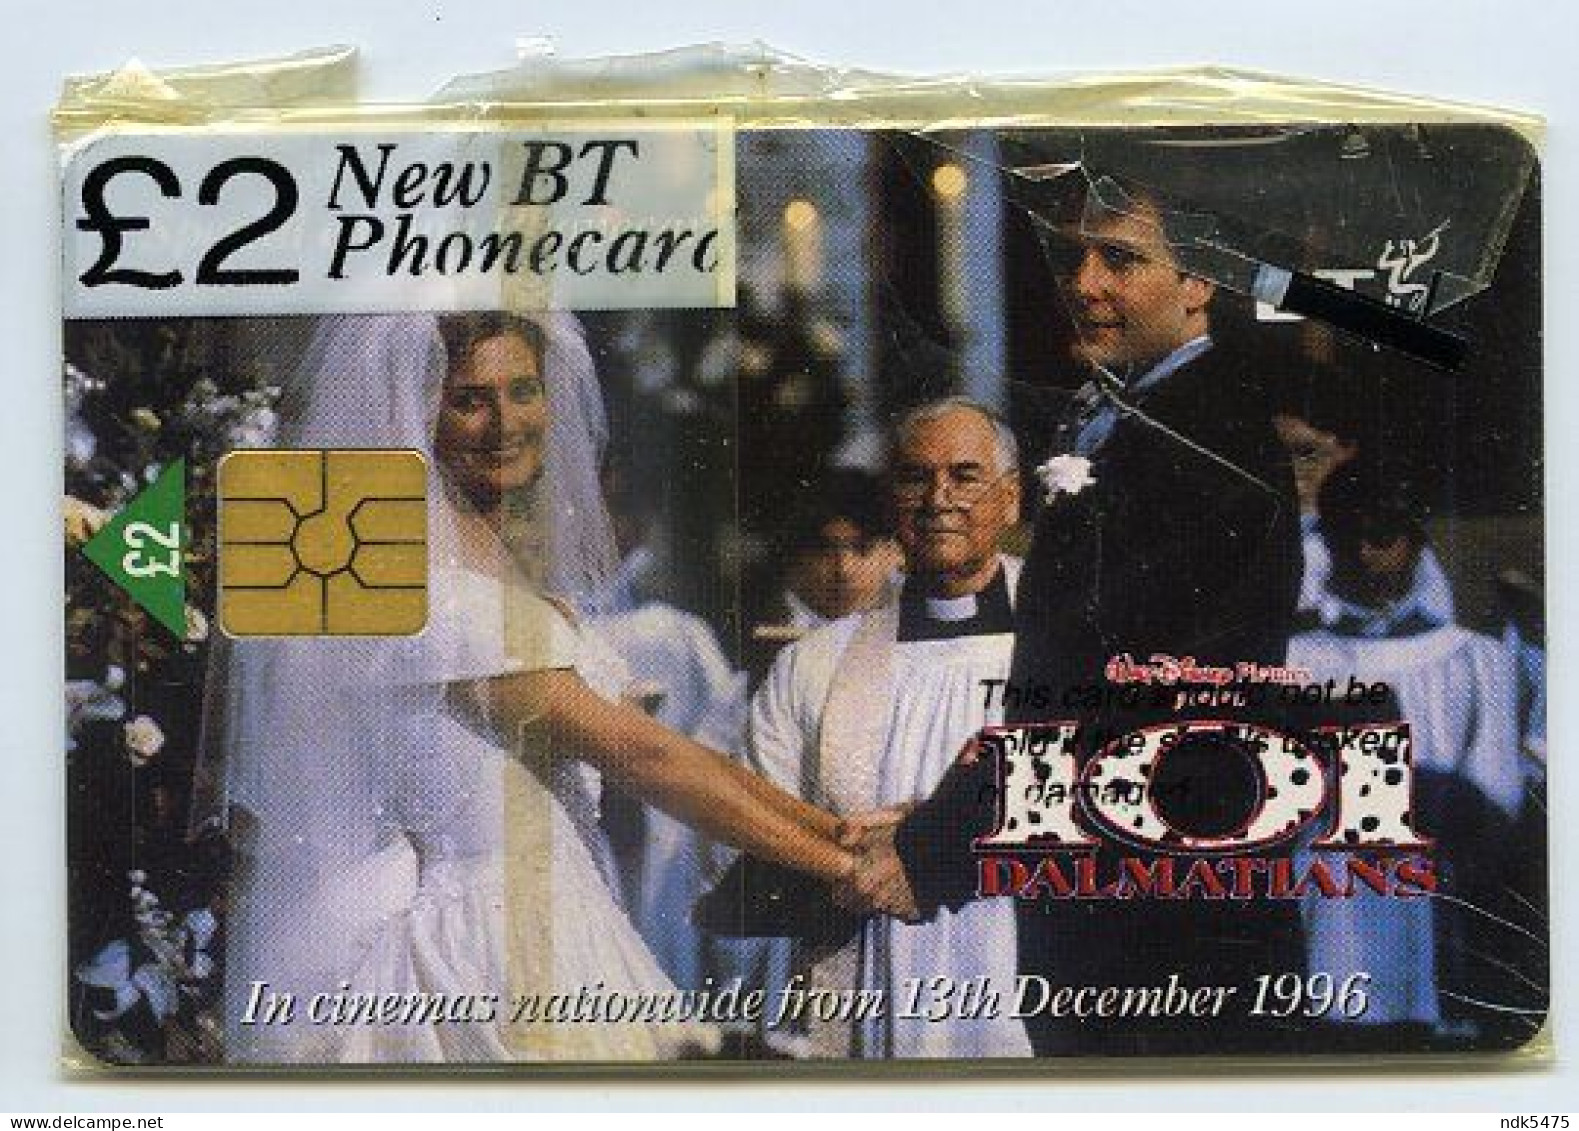 BT PHONECARD : 101 DALMATIONS - 1996 FILM : £2 / JOELY RICHARDSON, JEFF DANIELS - BT Promotie